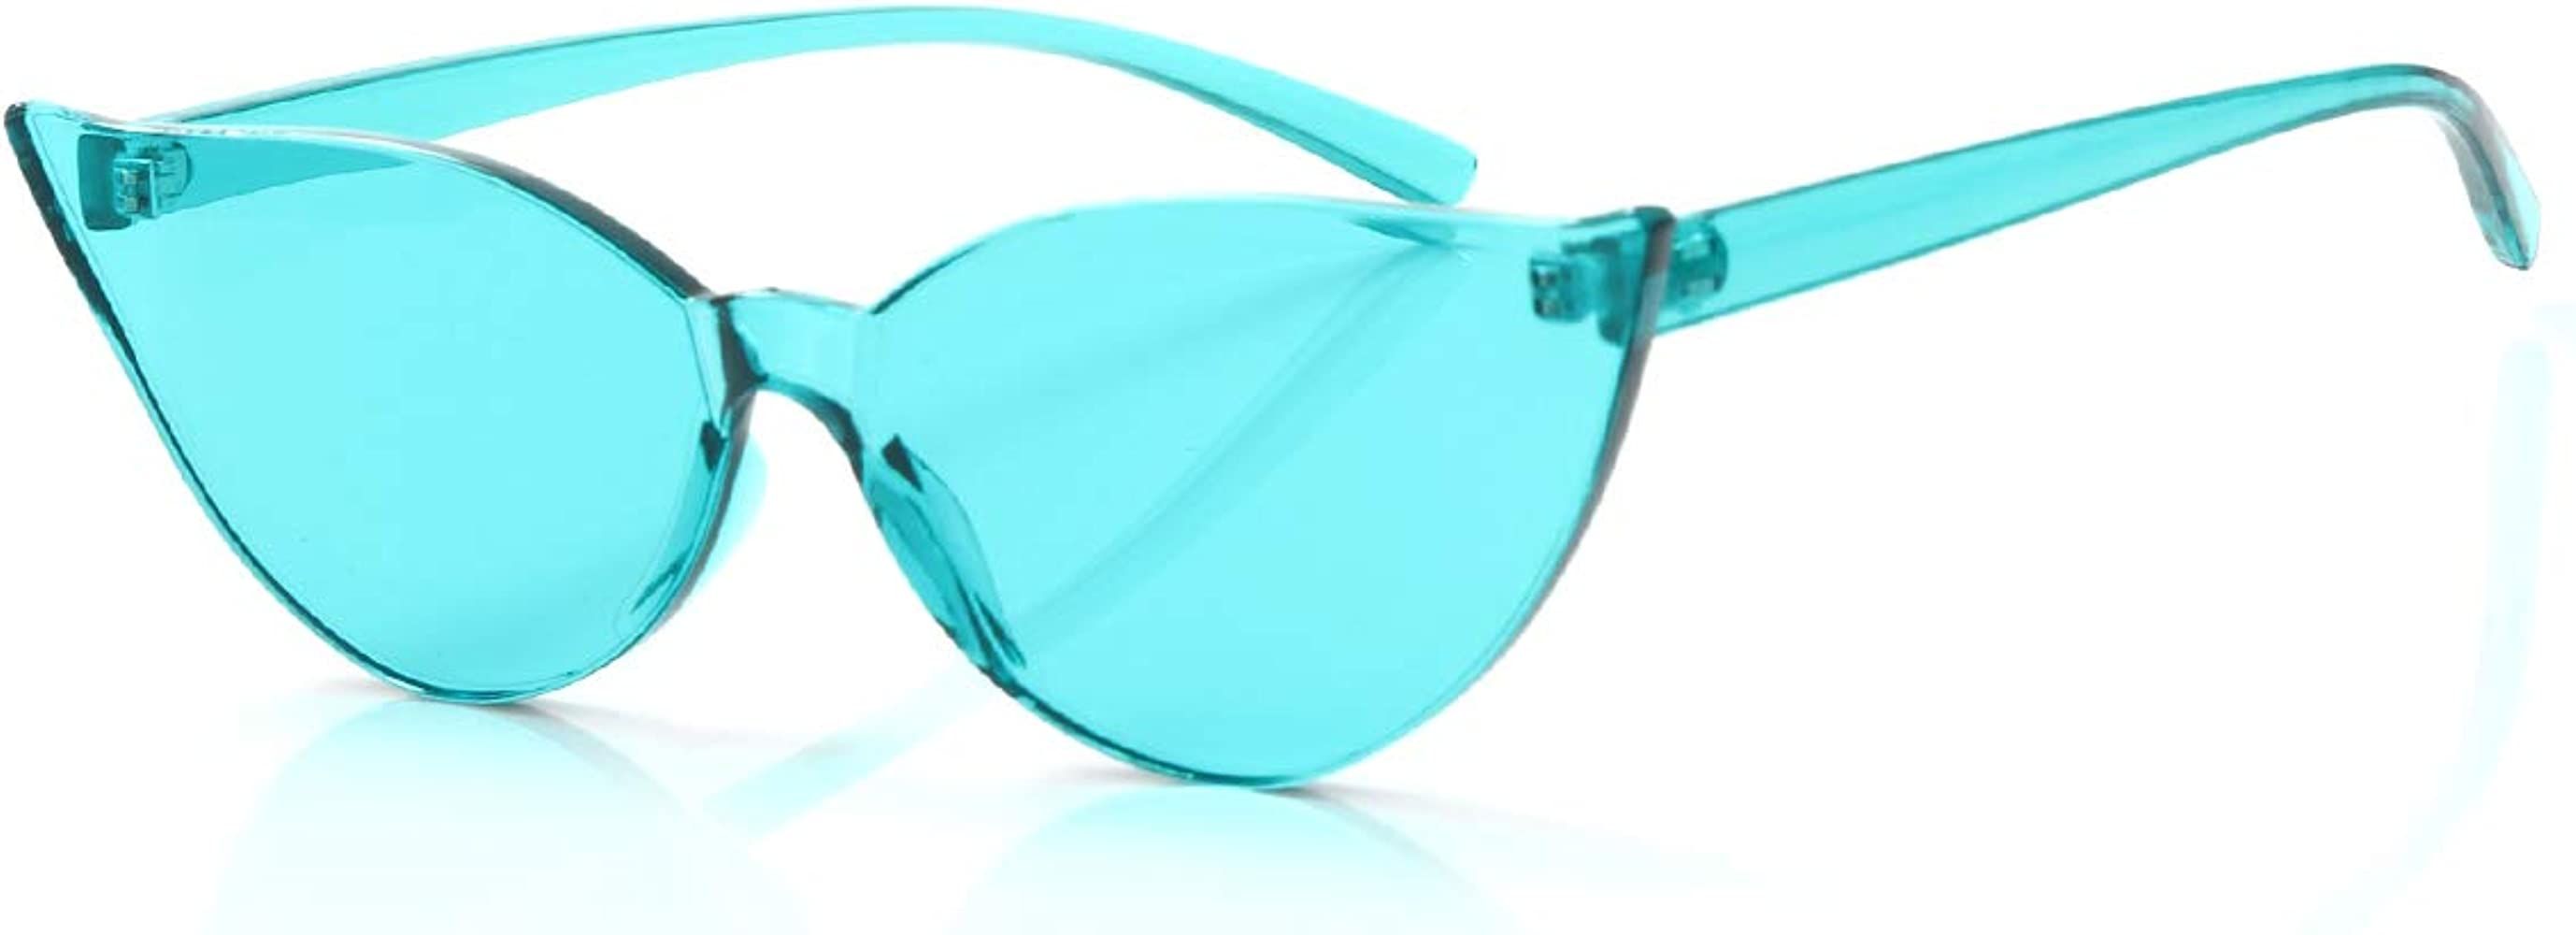 OLINOWL Cat Eye Rimless Sunglasses Oversized One Piece Colored Transparent Eyewear Retro Eyeglass... | Amazon (US)